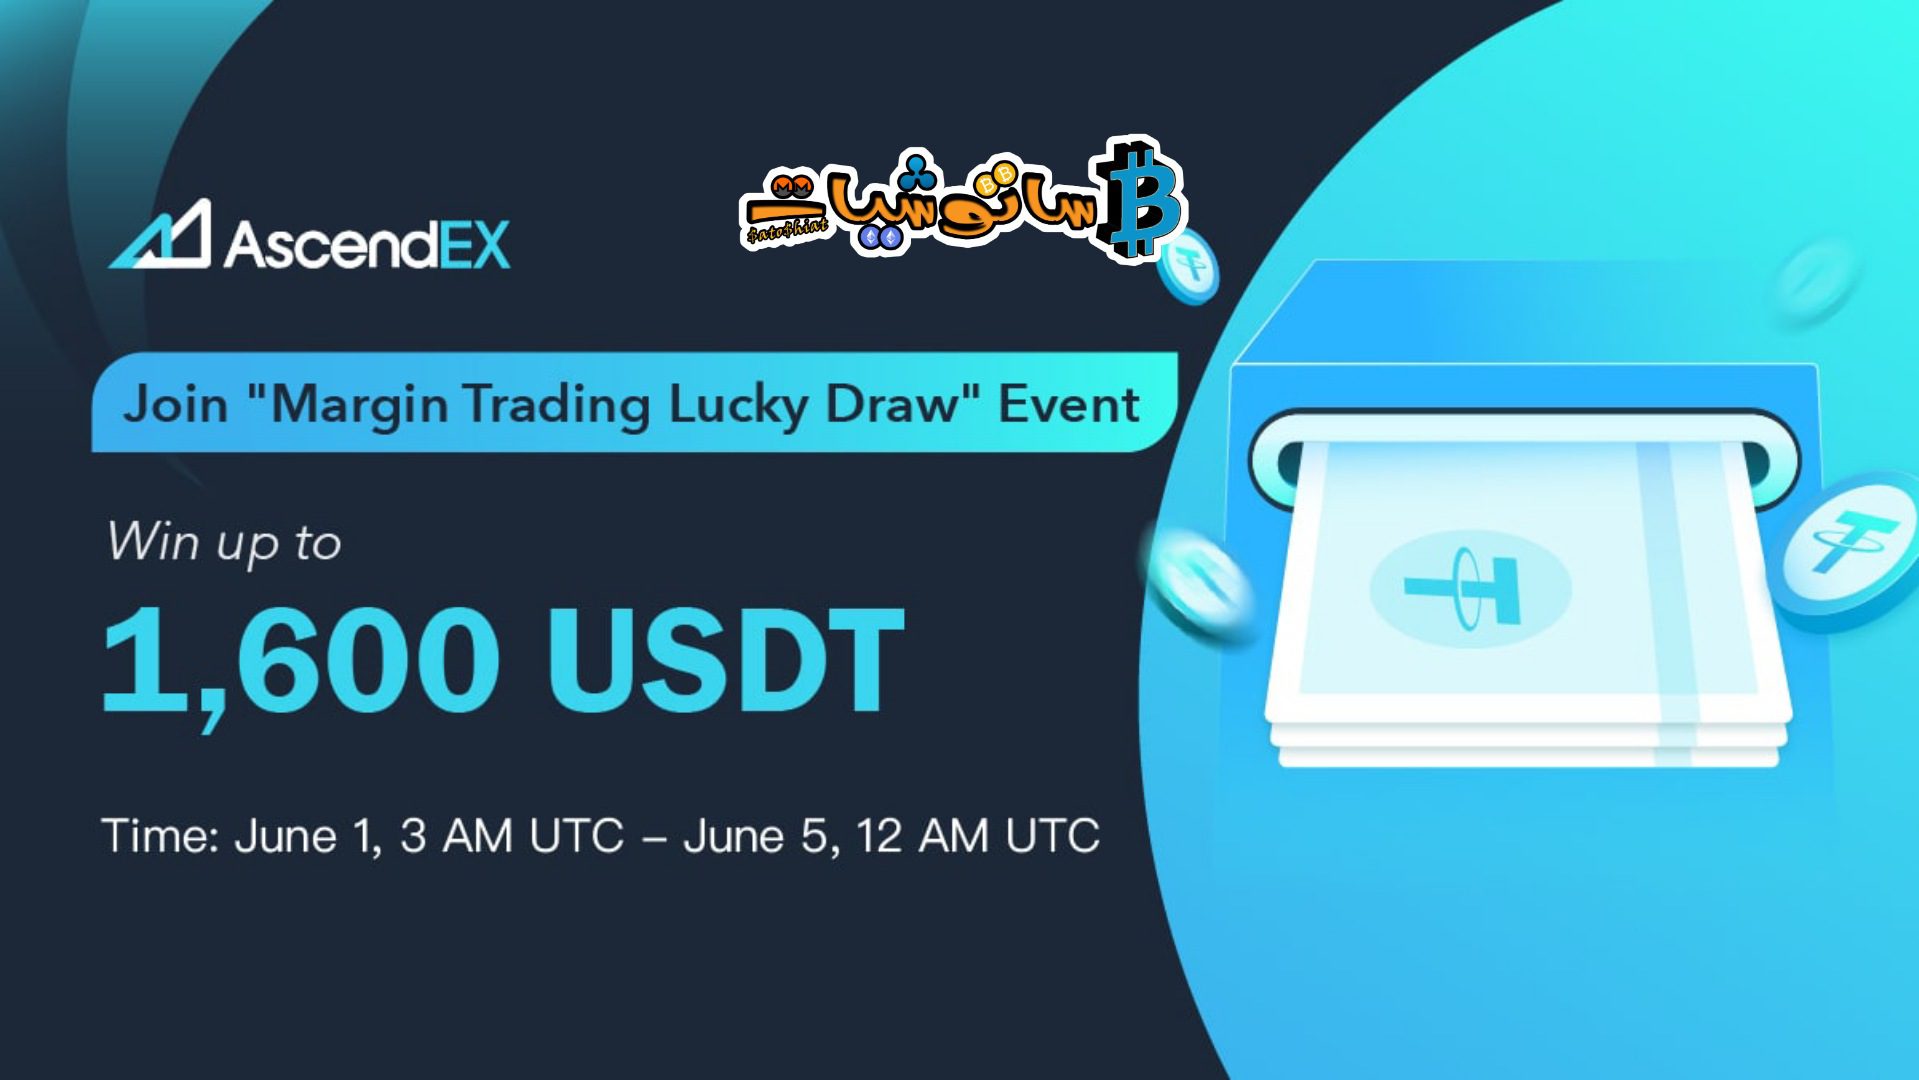 انضم إلى حدث "Margin Trading Lucky Draw" من AscendEX واربح حتى 1600 دولار أمريكي